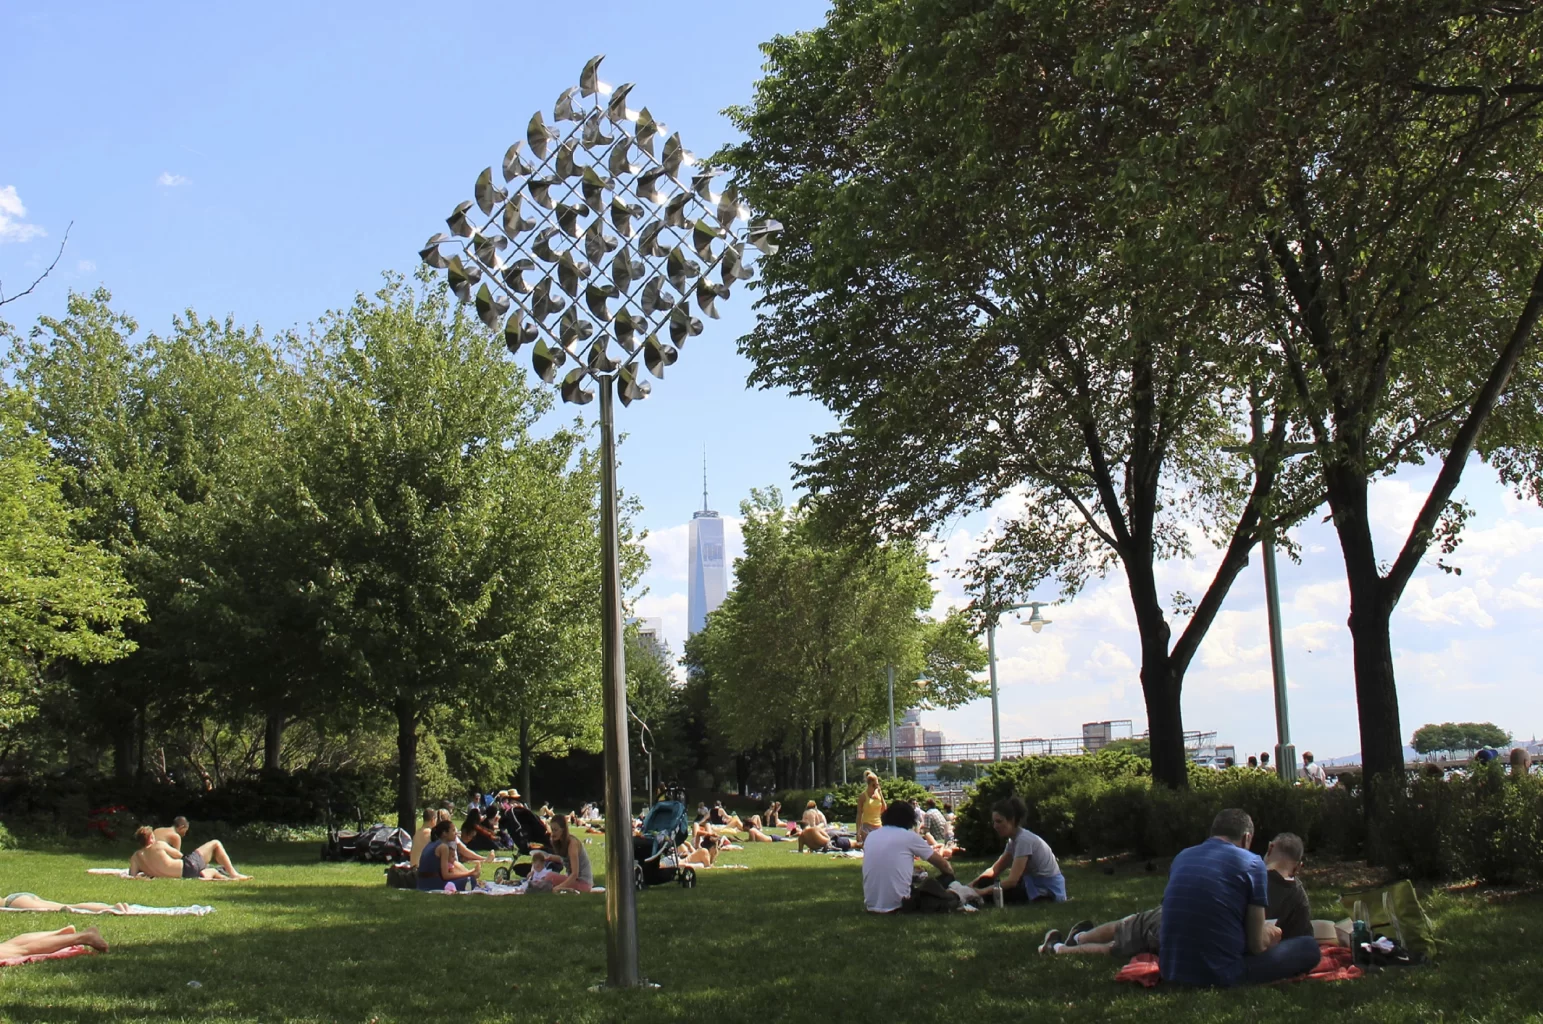 GEORGE SHERWOOD sculptural installation at Hudson River Park